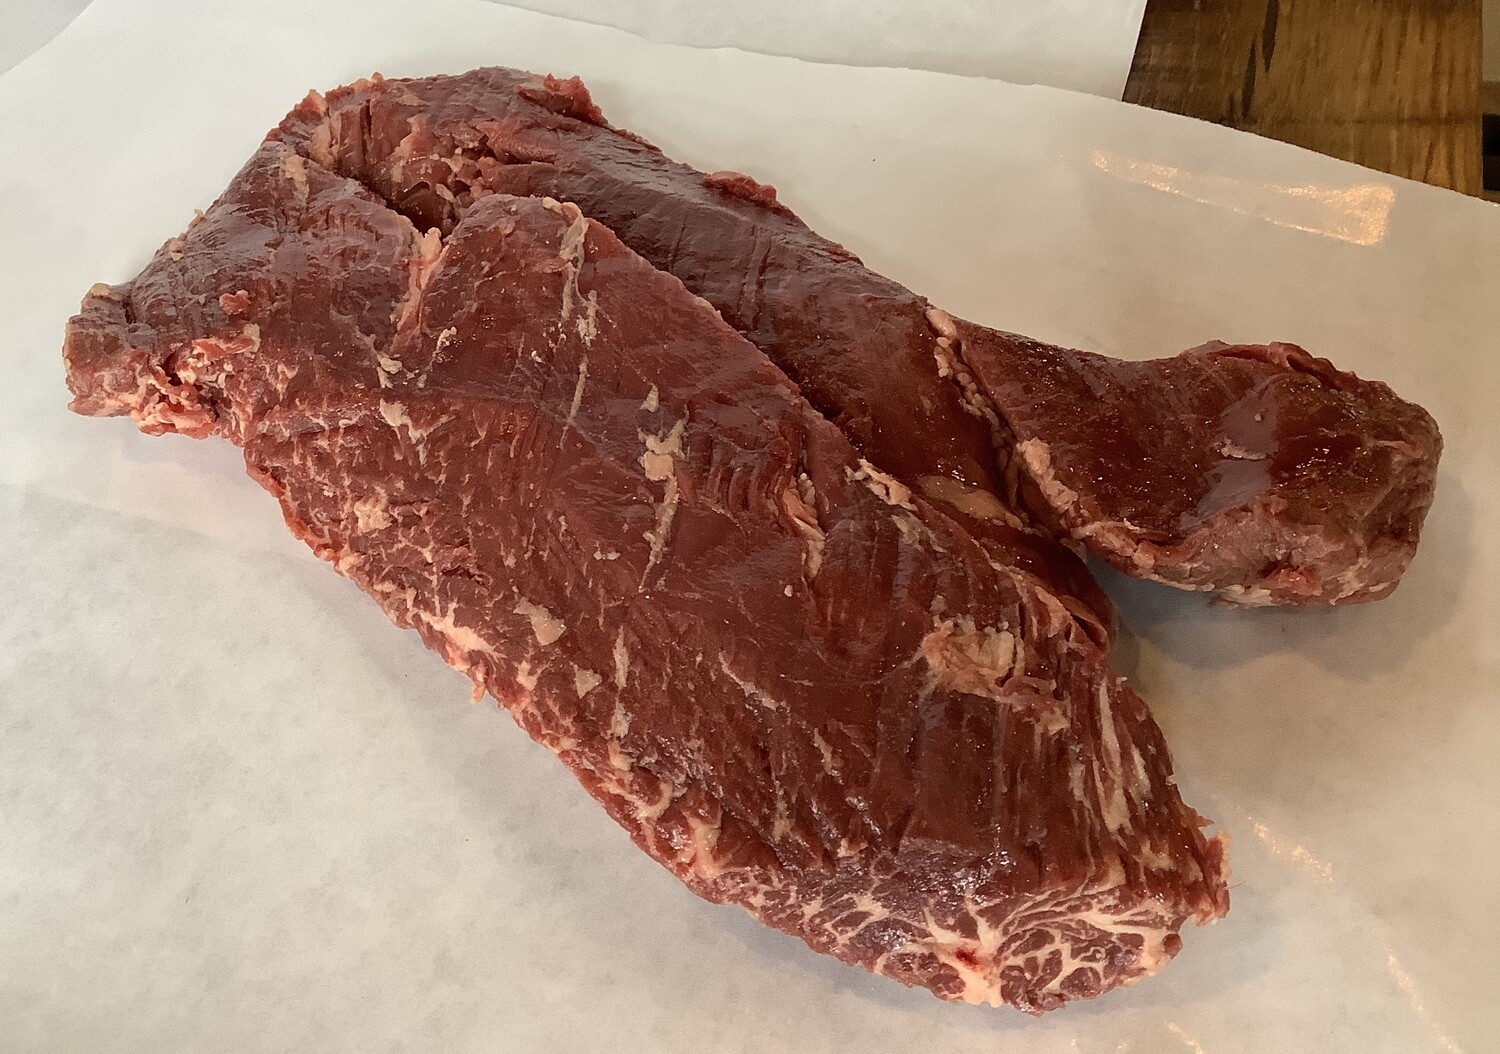 Hanger Steak (priced per pound)